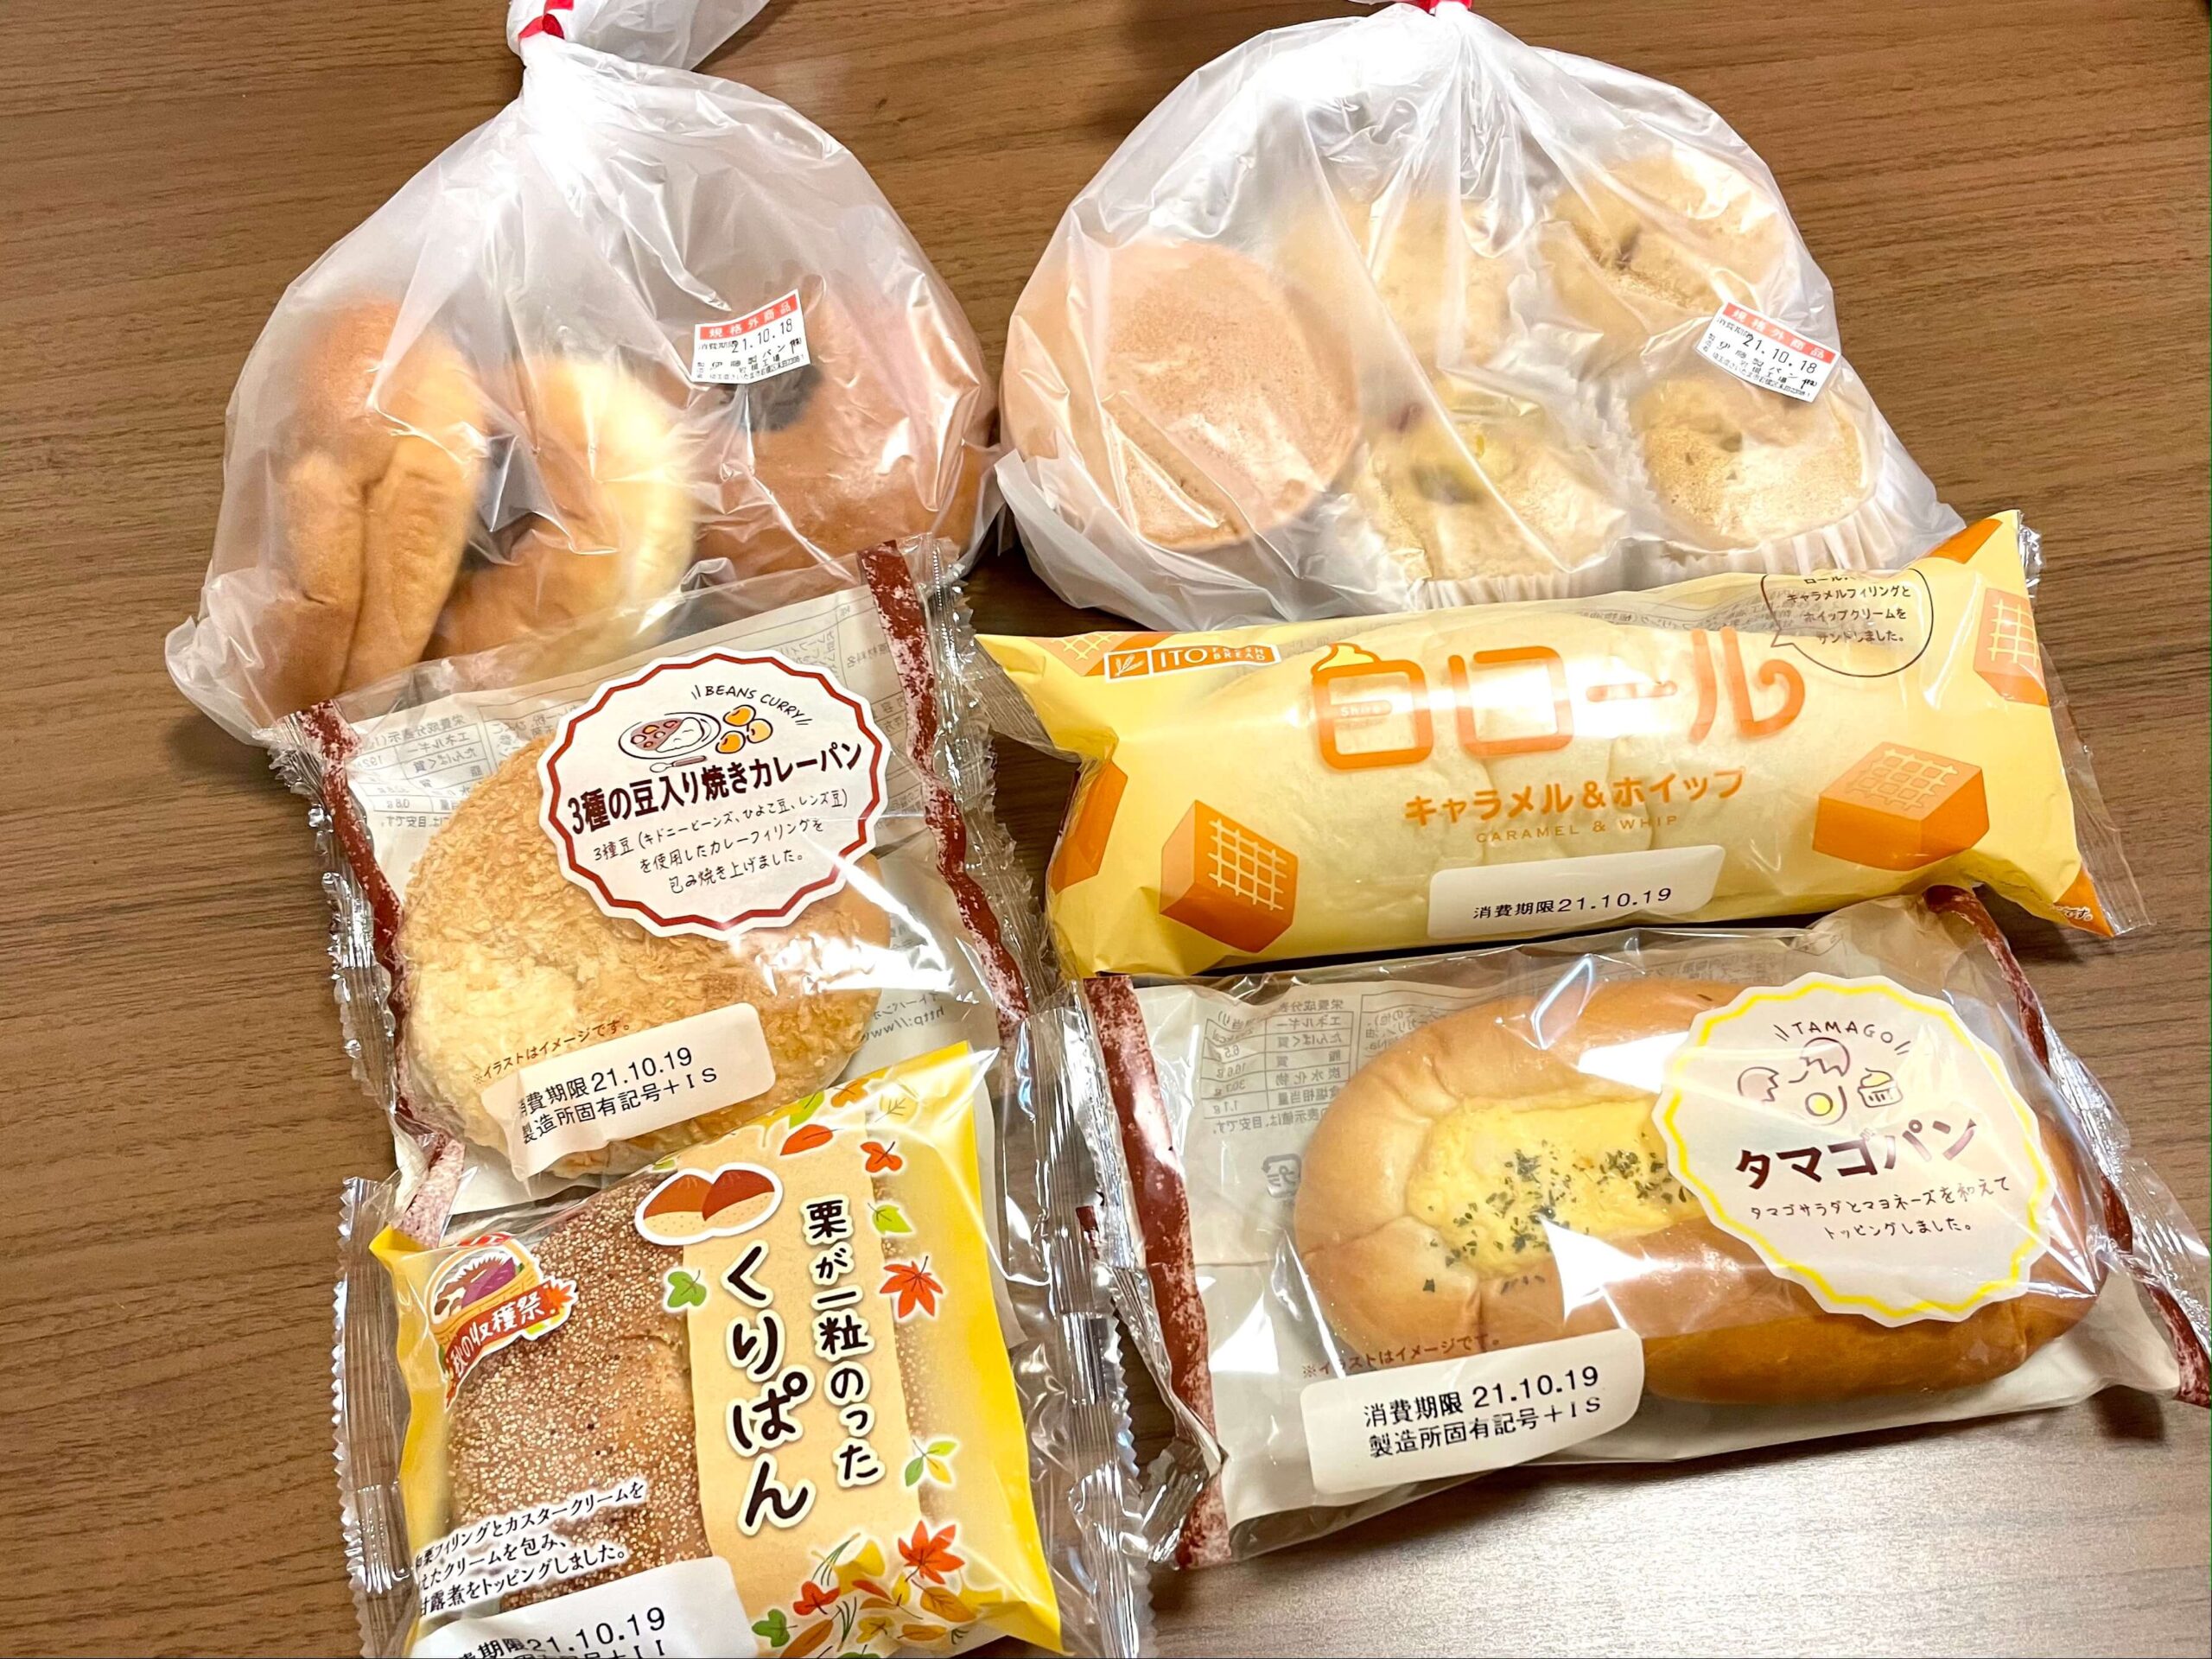 伊藤パン 岩槻工場直売店は規格外菓子パンが激安 売り切れや駐車場に注意しよう さいたまっぷる